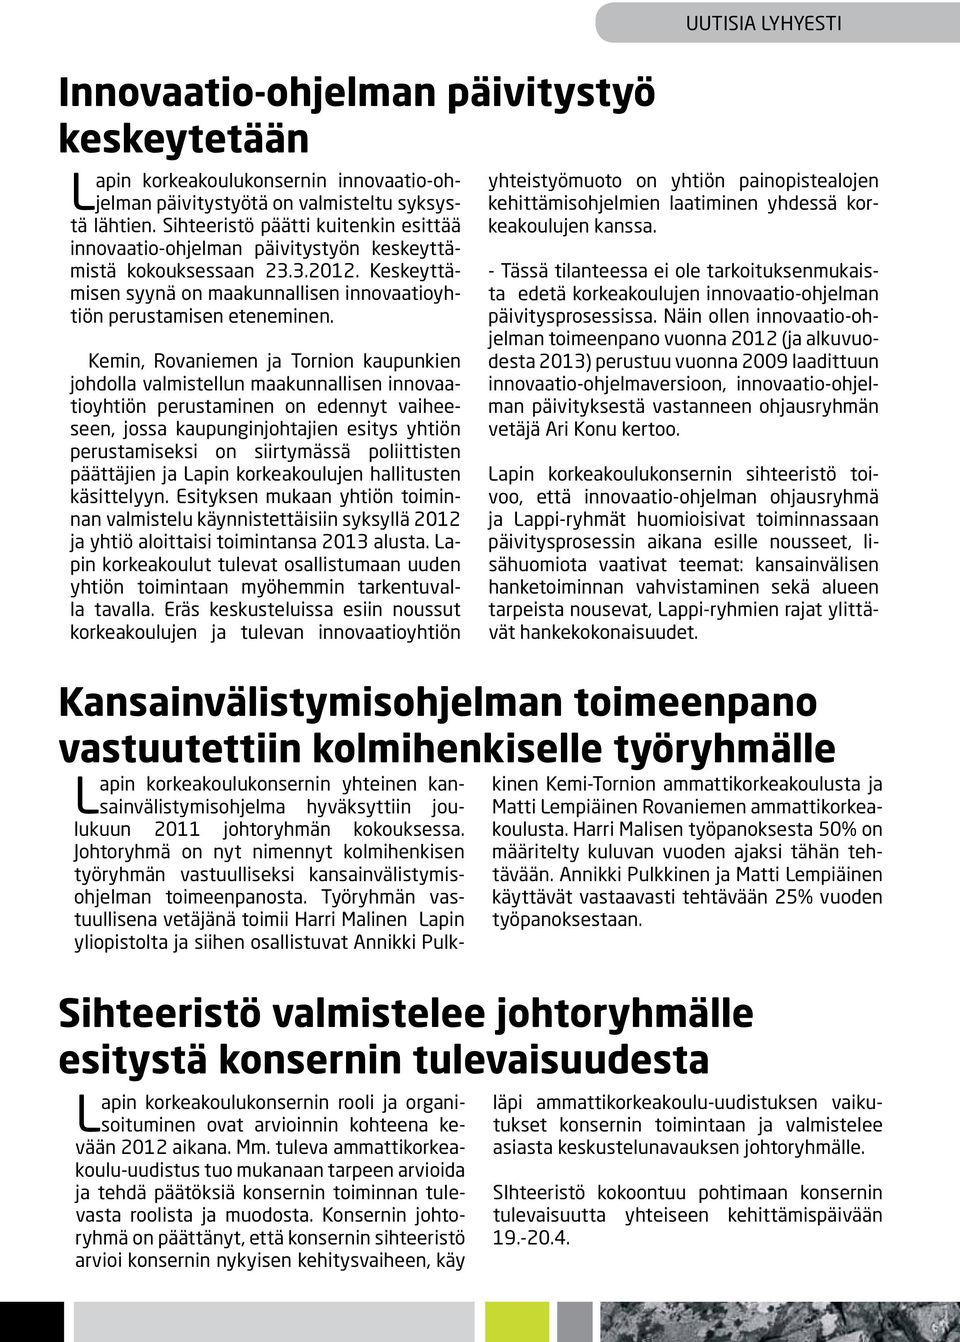 Kemin, Rovaniemen ja Tornion kaupunkien johdolla valmistellun maakunnallisen innovaatioyhtiön perustaminen on edennyt vaiheeseen, jossa kaupunginjohtajien esitys yhtiön perustamiseksi on siirtymässä